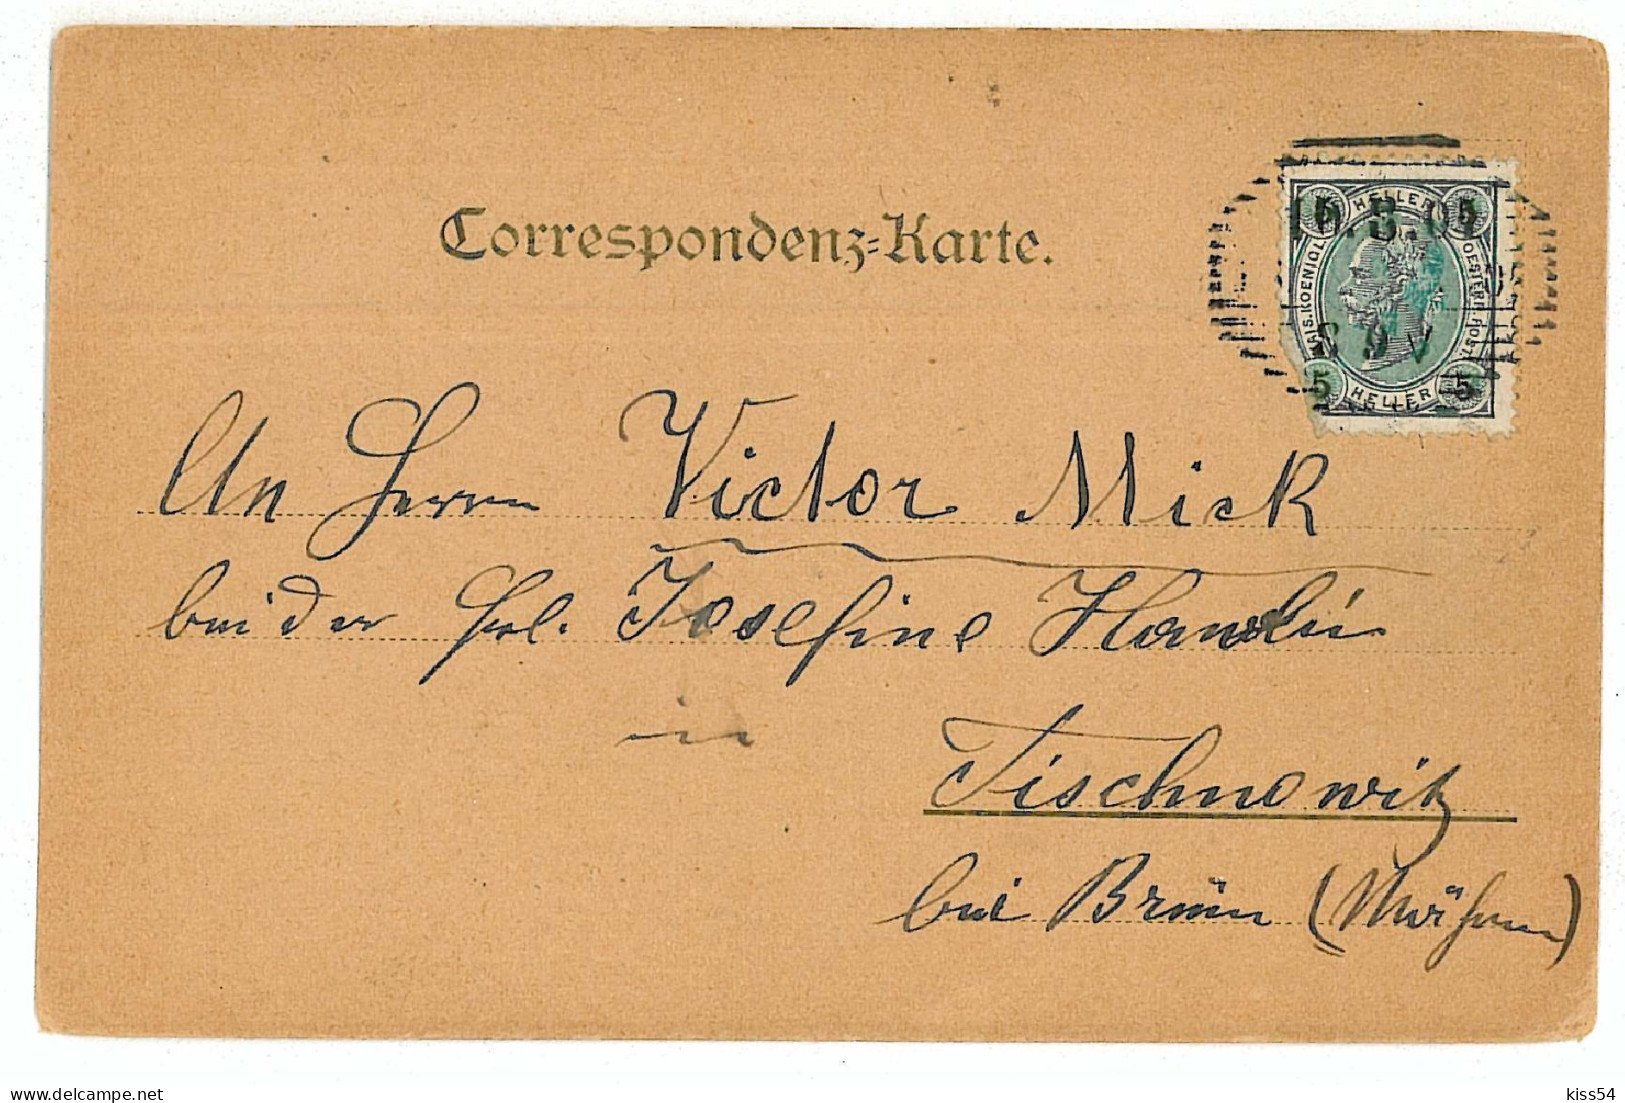 AUS 1 - 6370 VIENNA, Austria - Litho, Market - Old Postcard - Used - 1901 - Wien Mitte